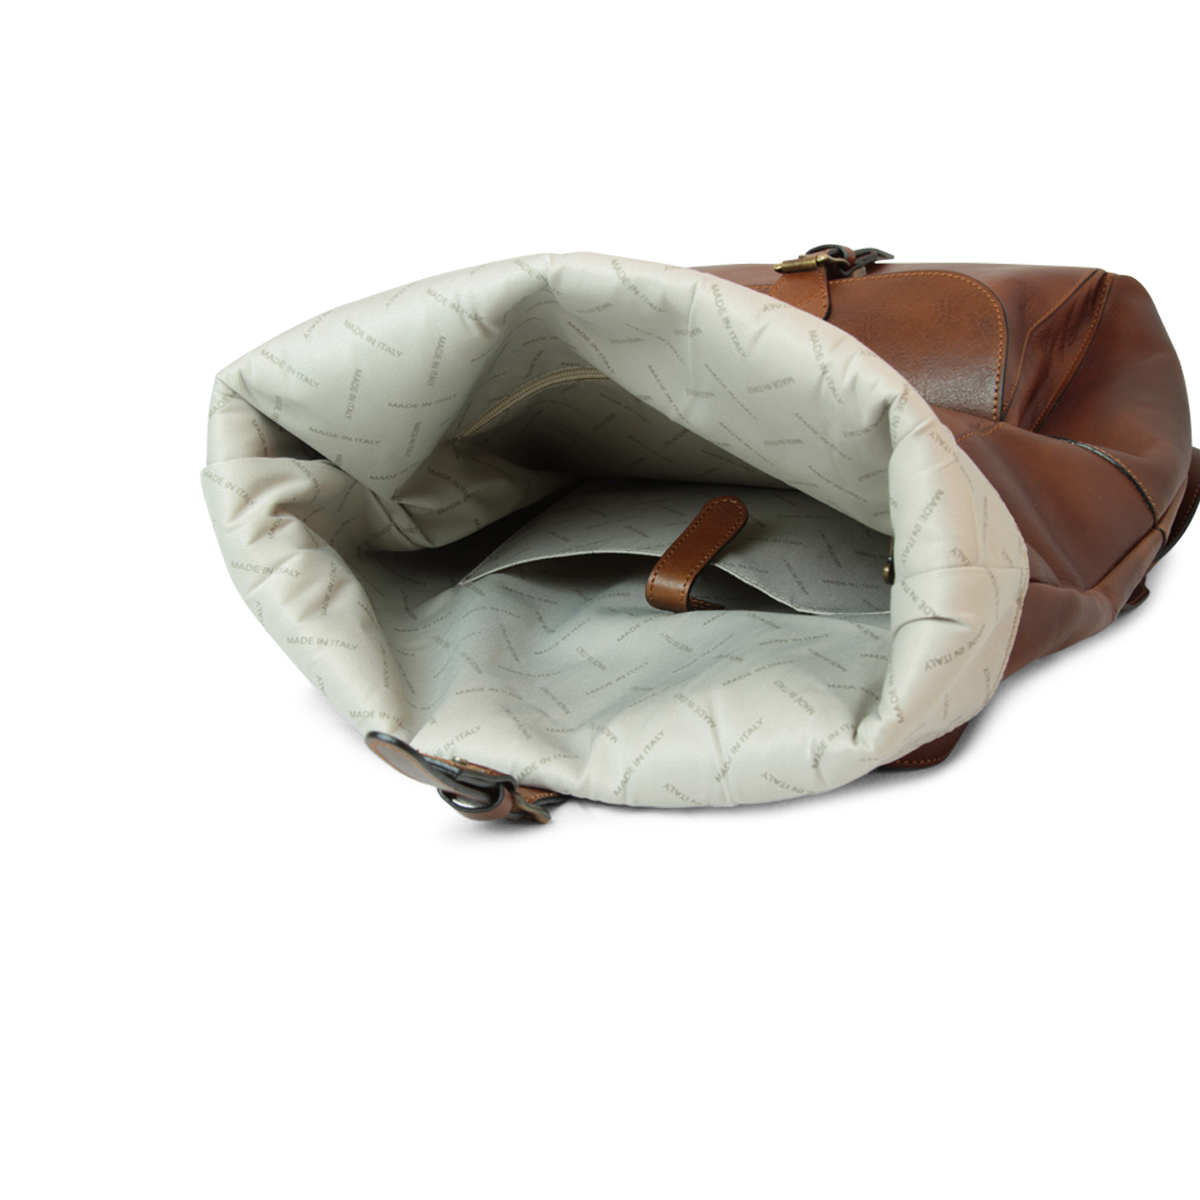 Full grain leather back pack - chestnut|415161CA|Old Angler Firenze